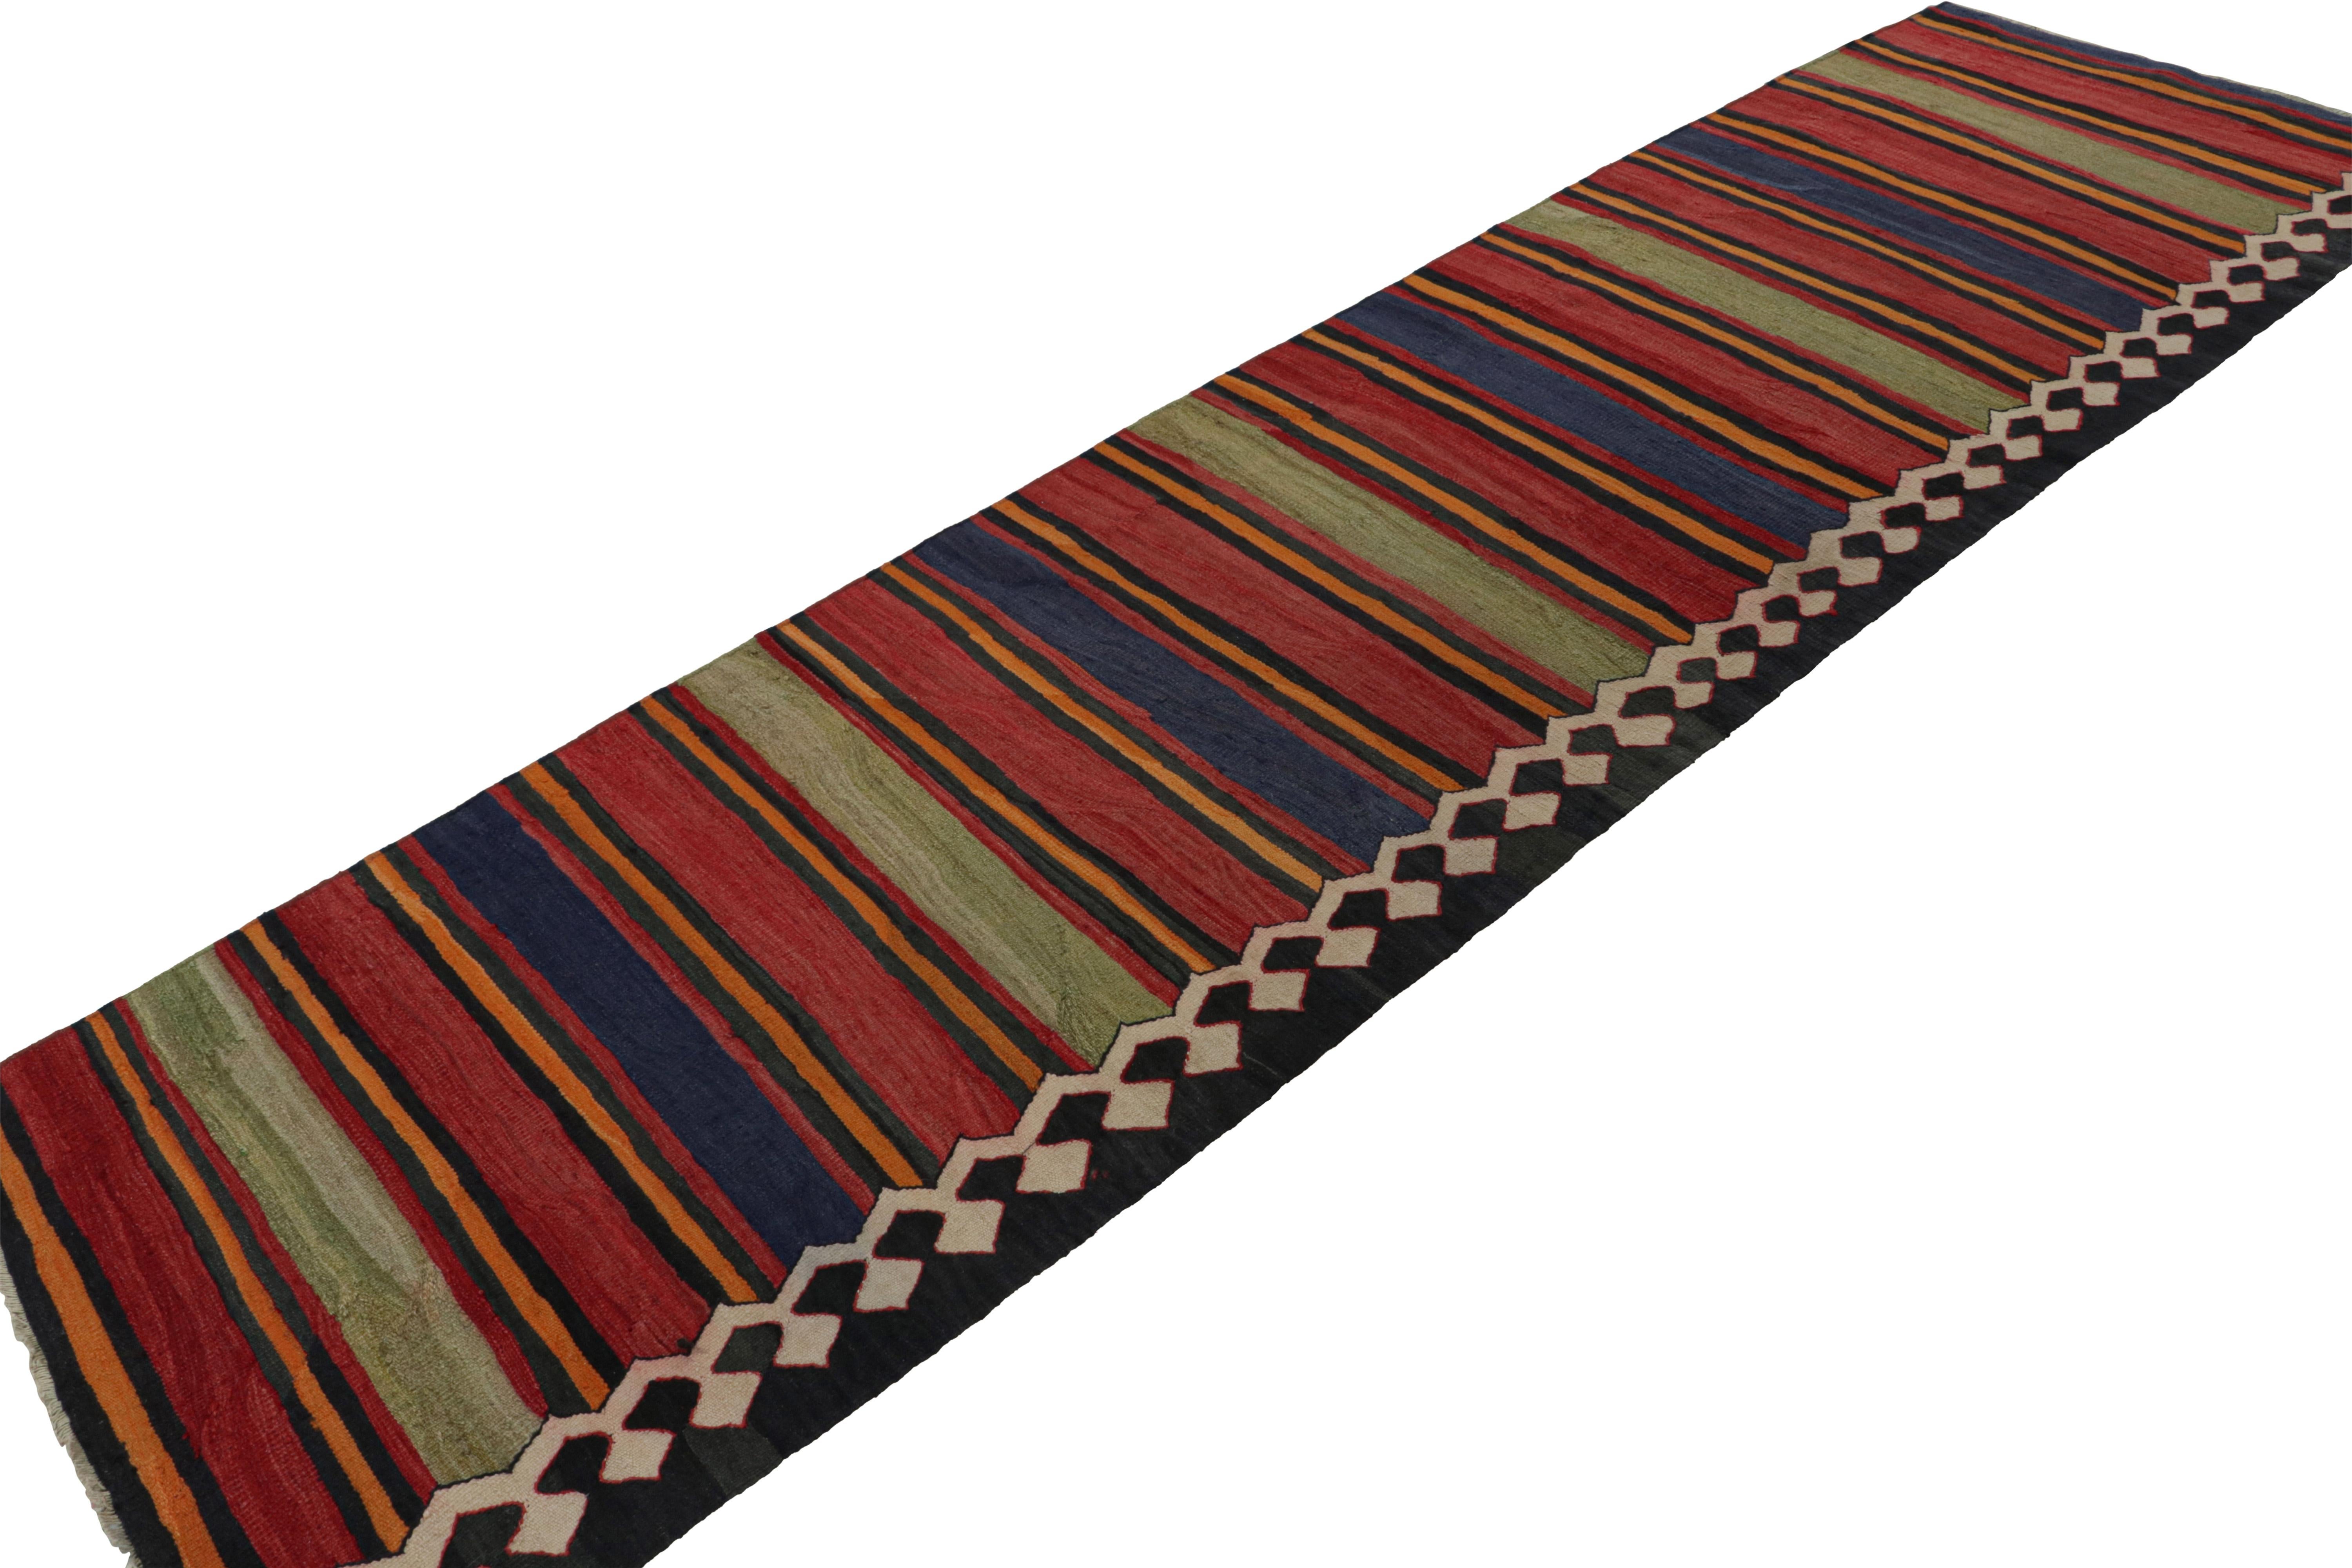 Handgeknüpft aus Wolle, diese 3x12 Vintage  Der afghanische Stammes-Kilim-Läufer aus der Zeit um 1950-1960 ist eine aufregende Neuheit in der Rug & Kilim Collection.  

Über das Design: 

Dieser aus Afghanistan stammende Läufer ist ein vielseitiges